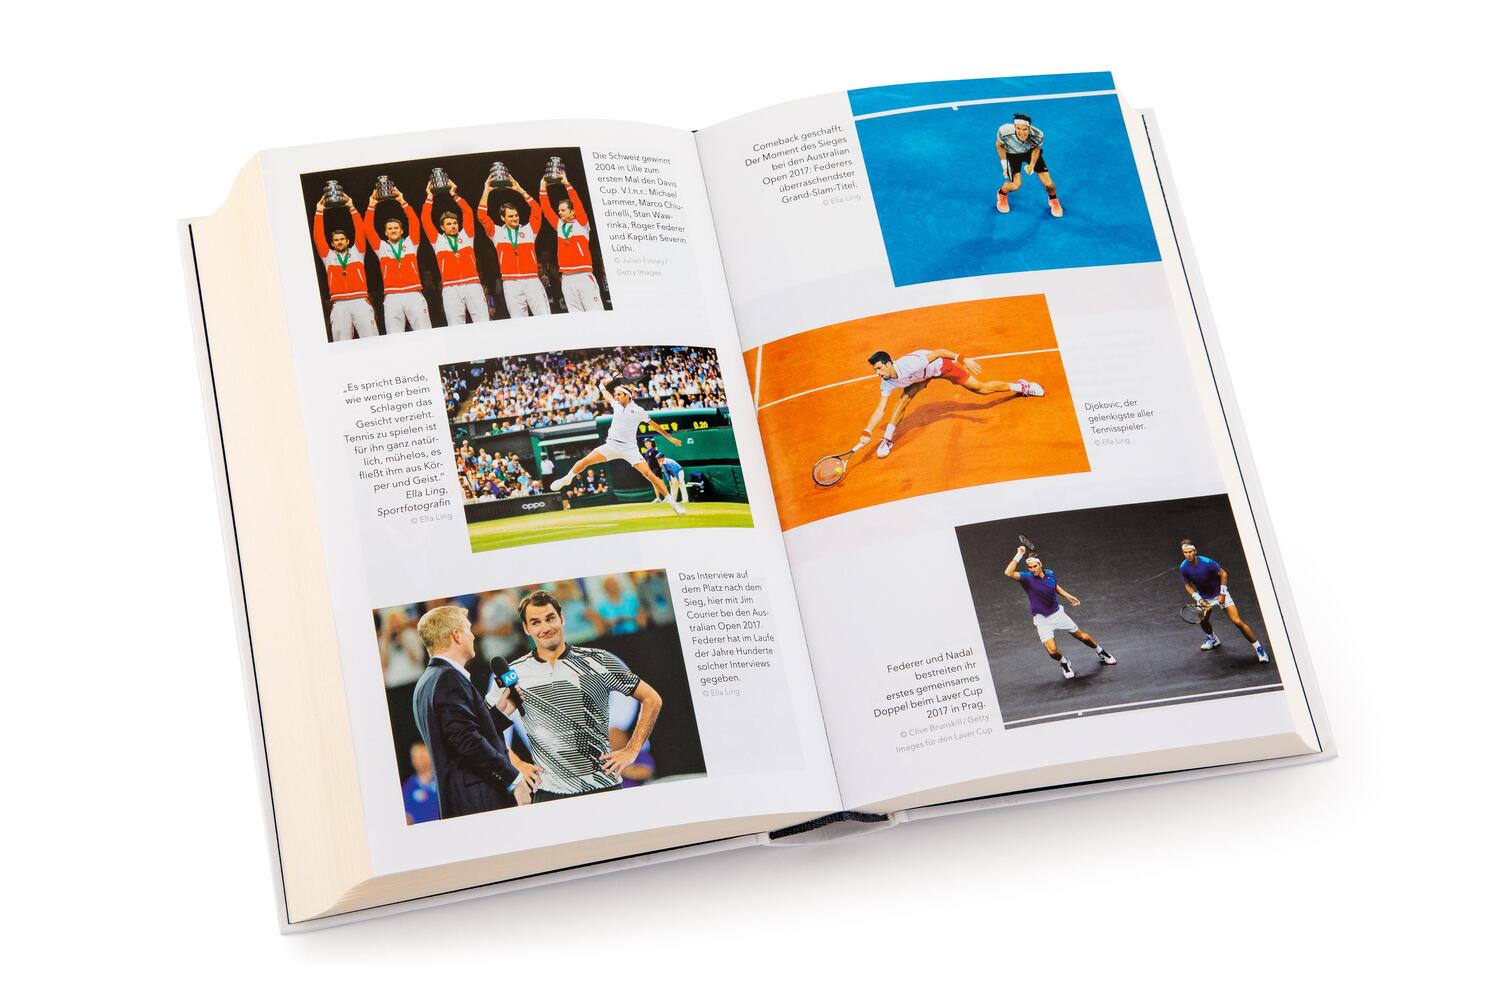 Bild: 9783985880065 | Roger Federer - Der Maestro | Christopher Clarey | Buch | 480 S.